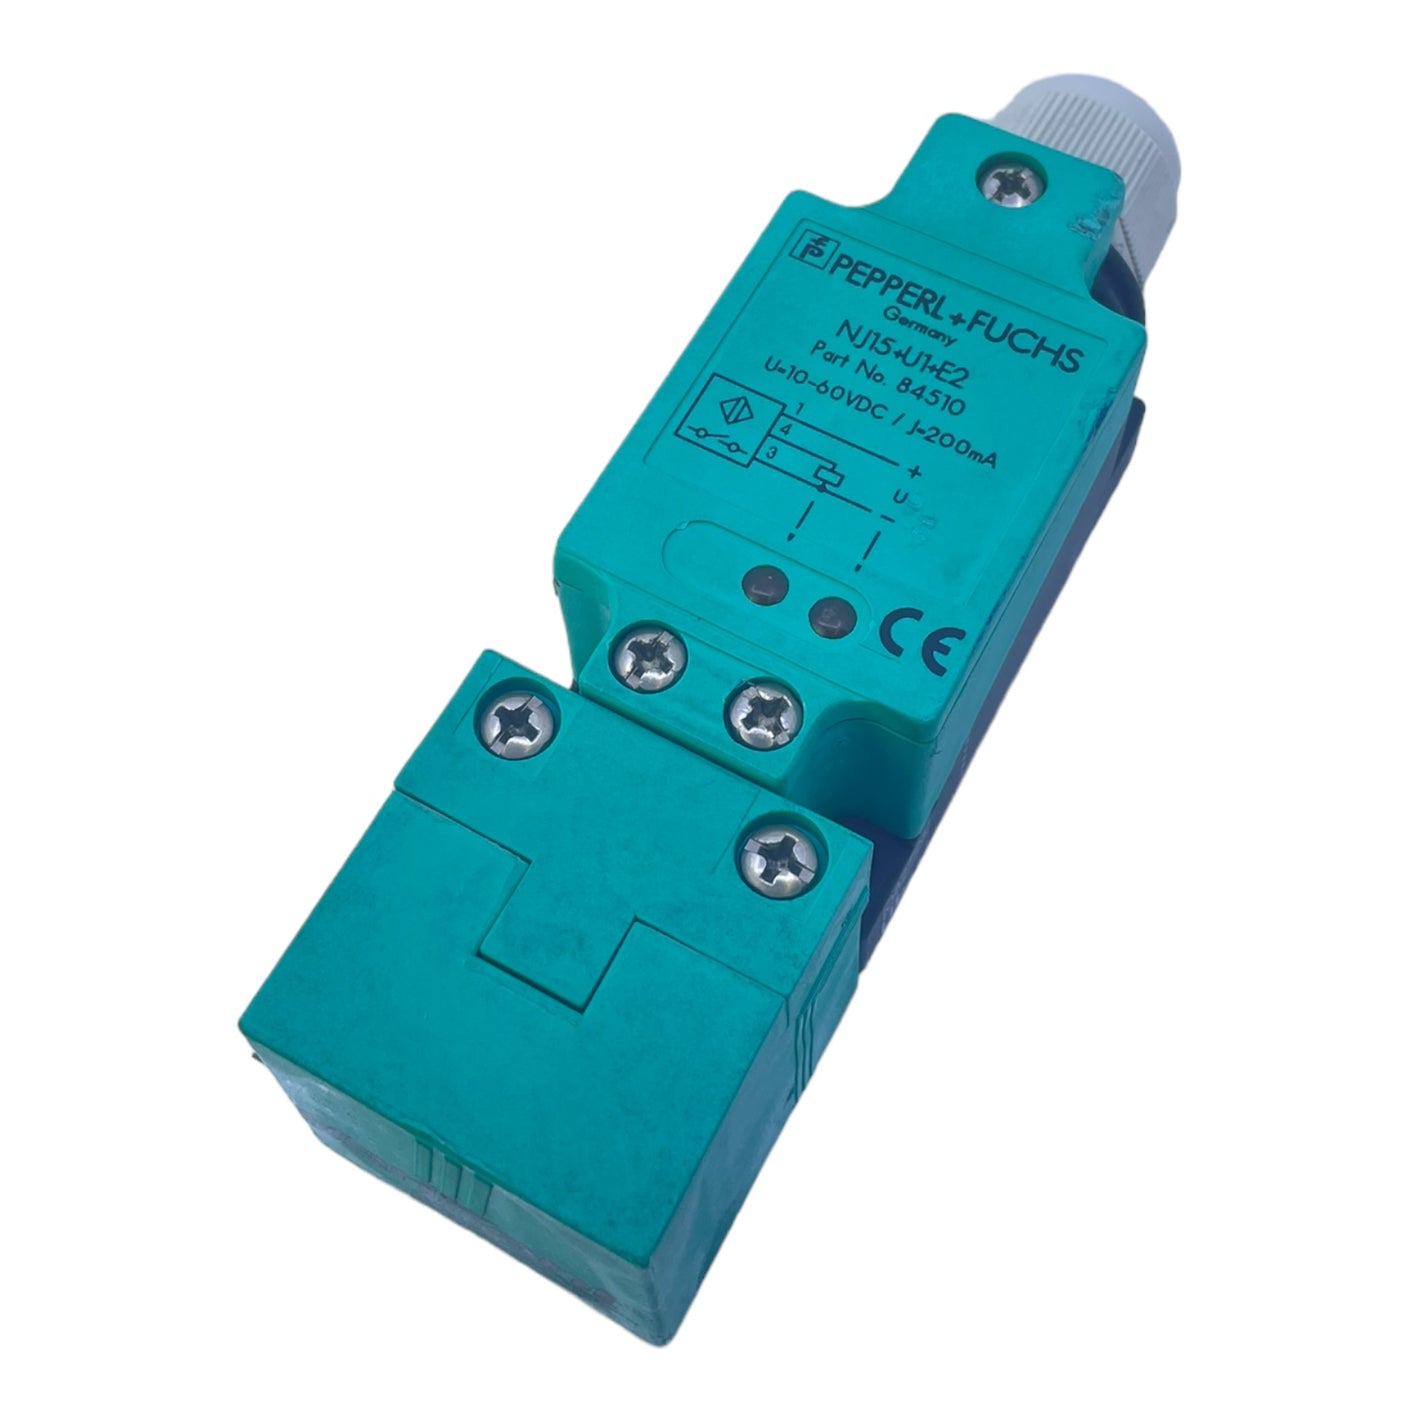 Pepperl+Fuchs NJ15+U1+E2 Induktiver Sensor für industriellen Einsatz 84510